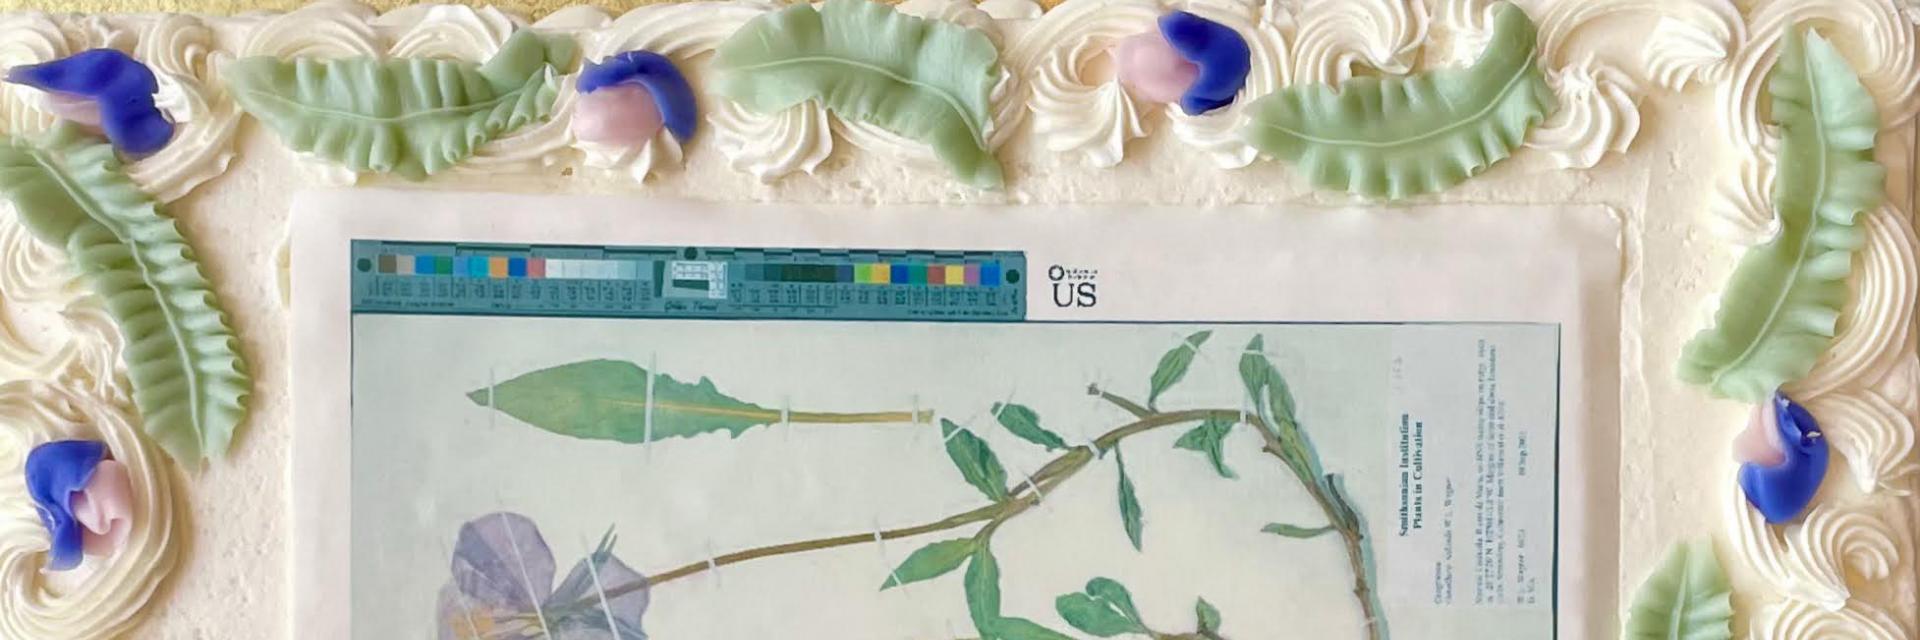 Image of cake with botany specimen on it